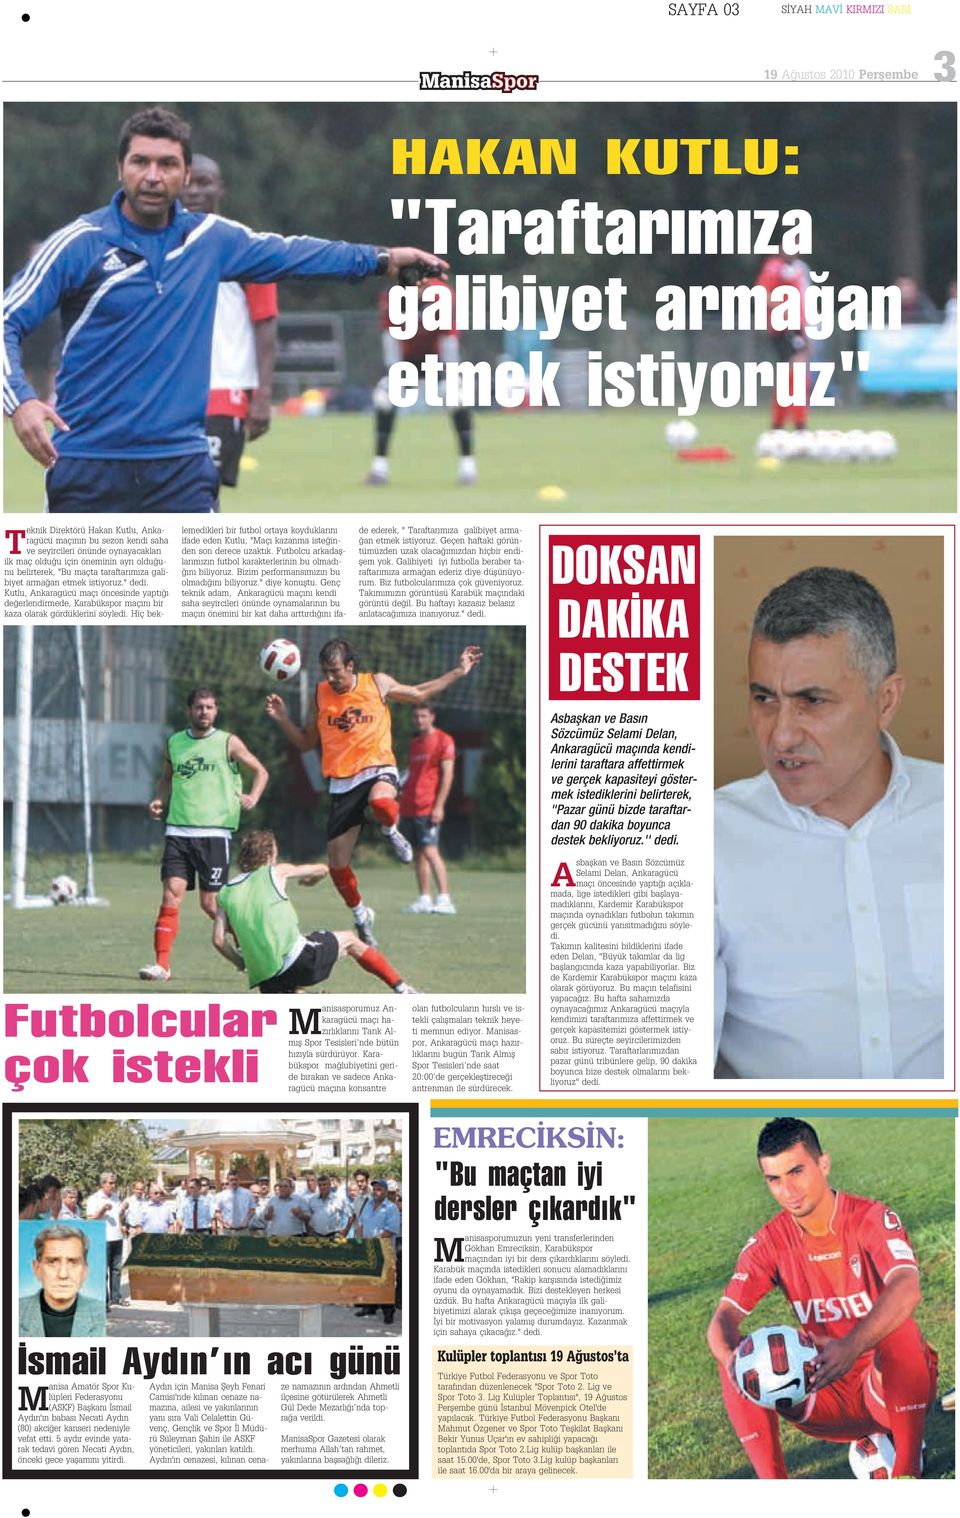 Kutlu, Ankaragücü maç öncesinde yapt de erlendirmede, Karabükspor maç n bir kaza olarak gördüklerini söyledi.